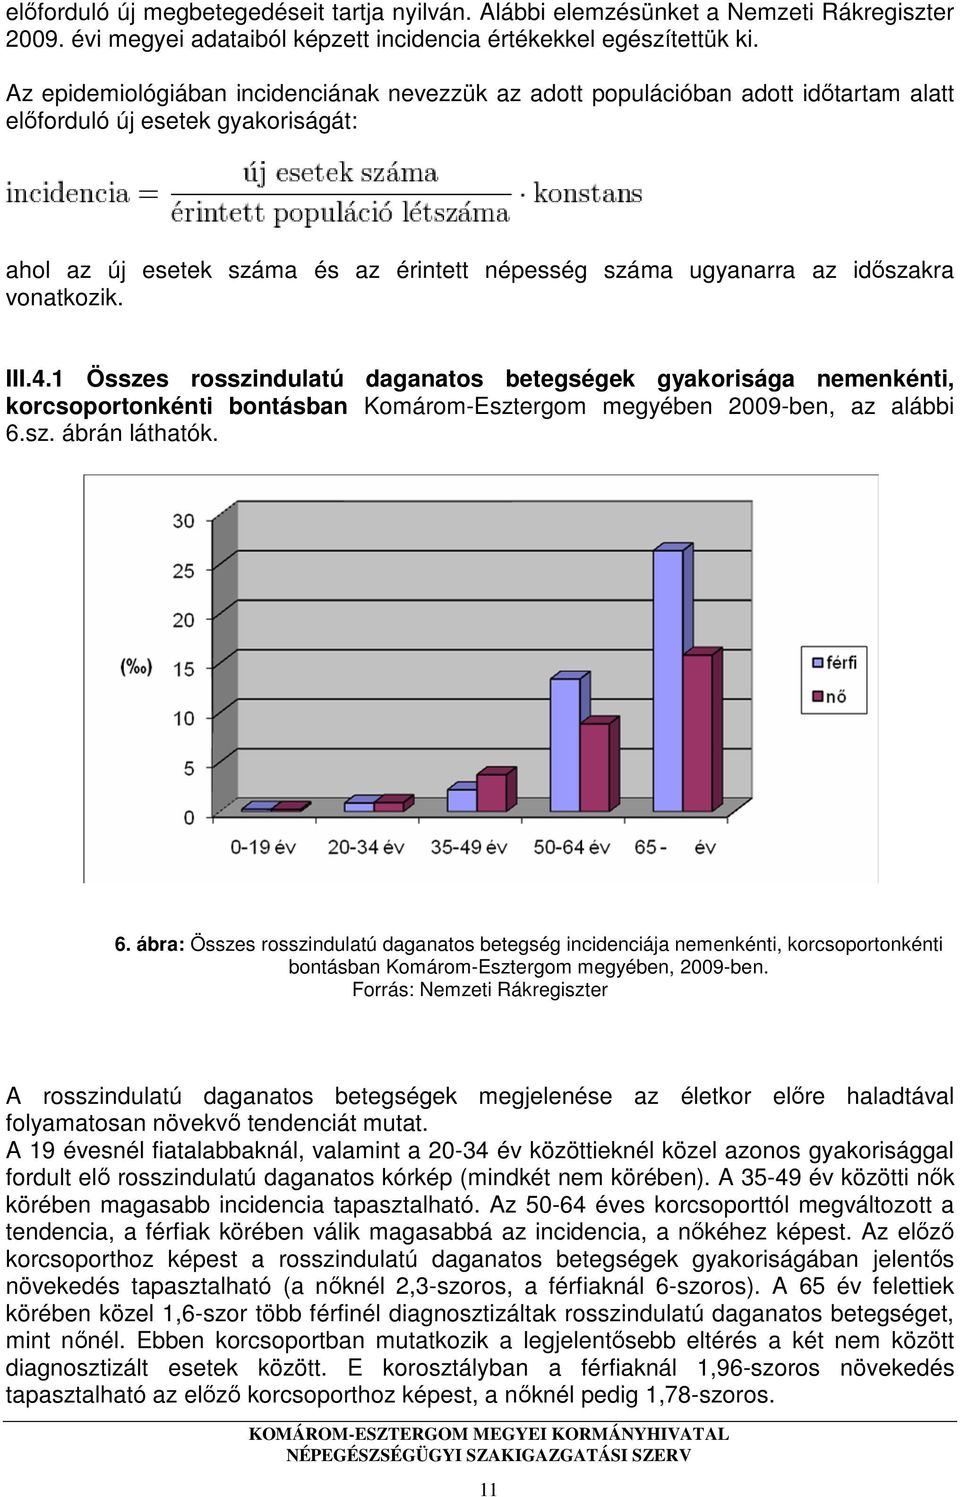 vonatkozik. III.4.1 Összes rosszindulatú daganatos betegségek gyakorisága nemenkénti, korcsoportonkénti bontásban Komárom-Esztergom megyében 2009-ben, az alábbi 6.